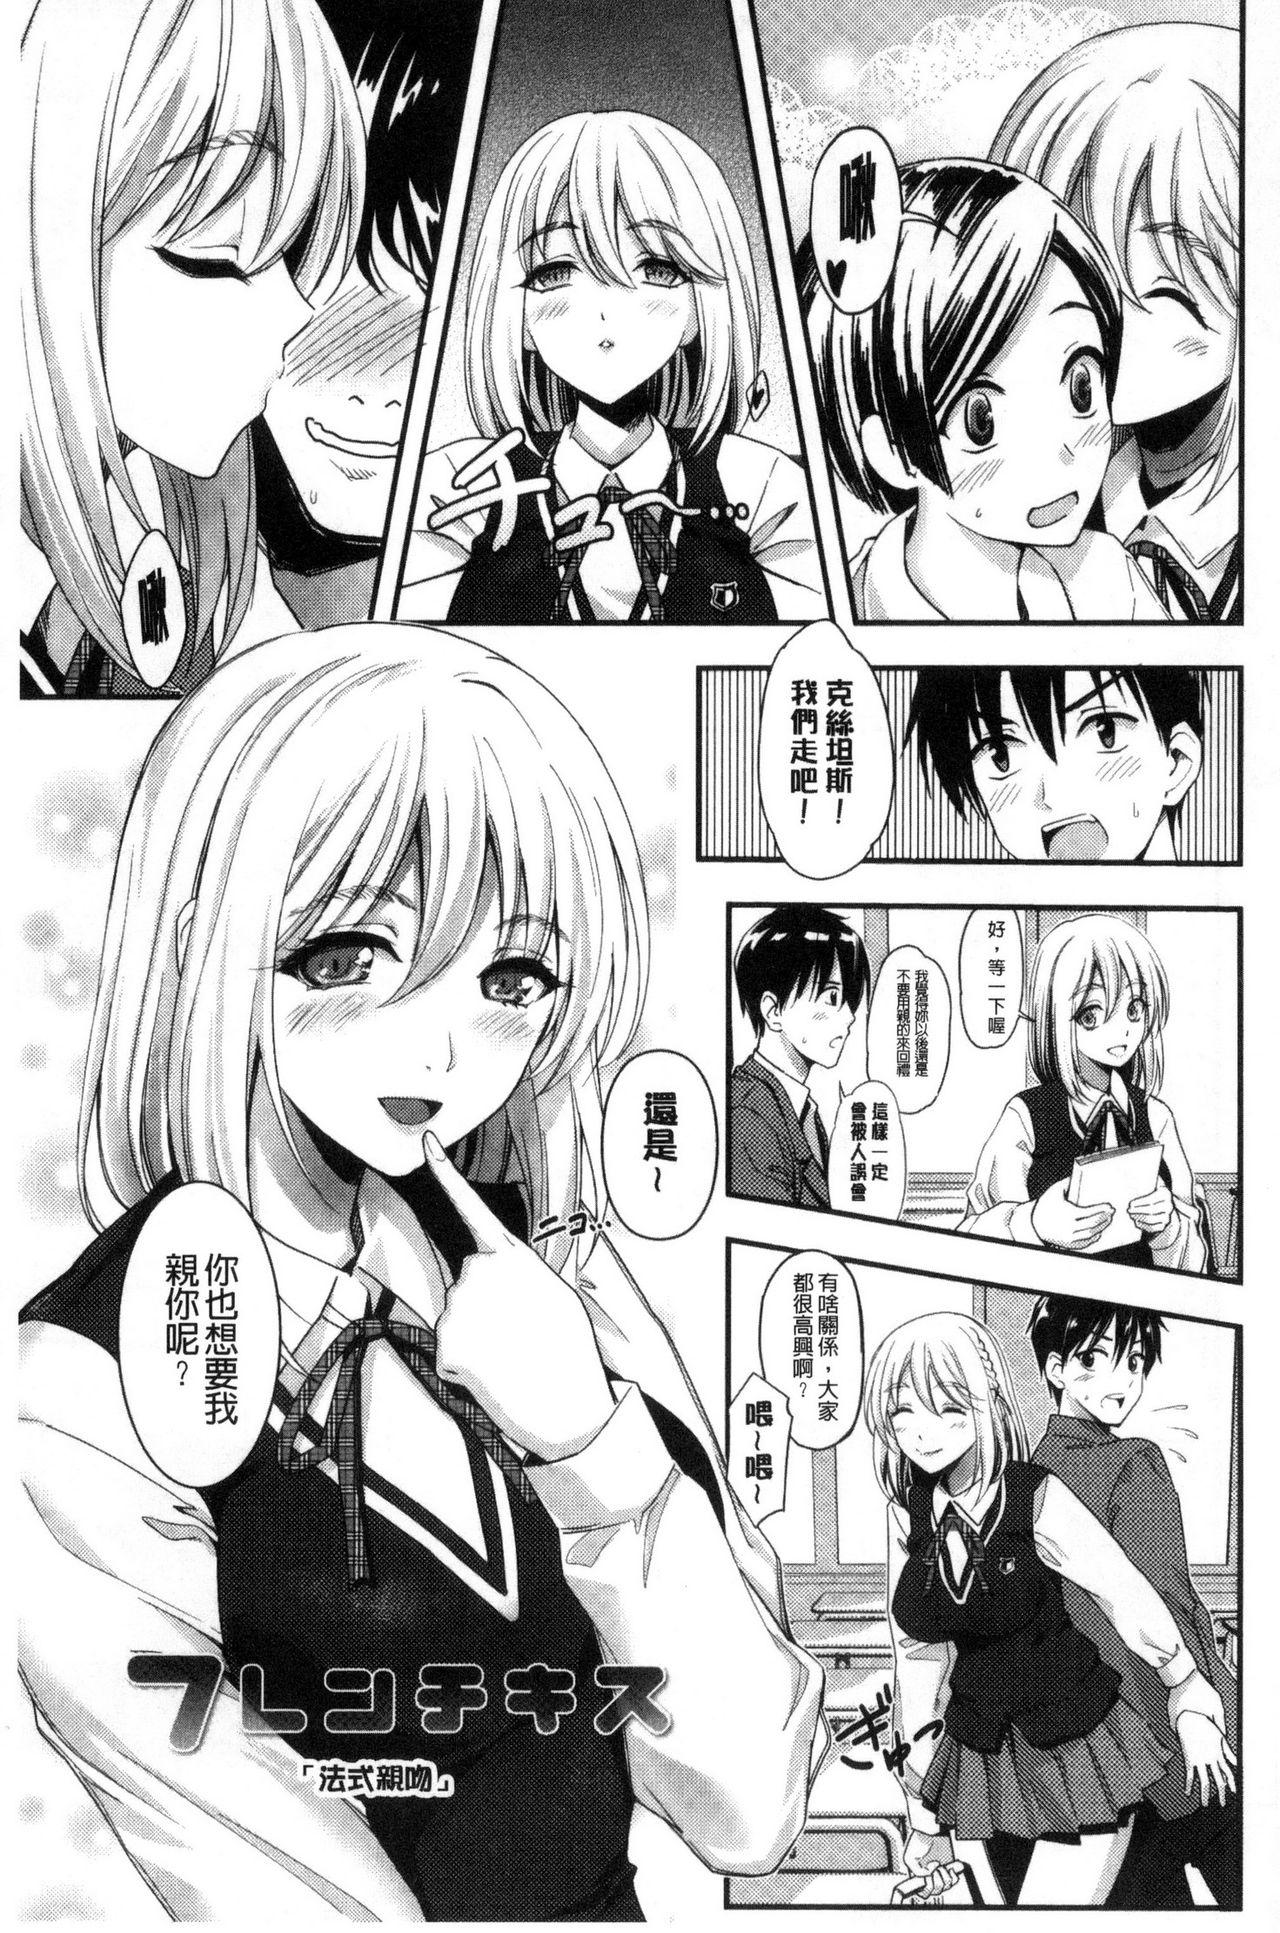 Seifuku no Mama Aishinasai! - Love in school uniform 126